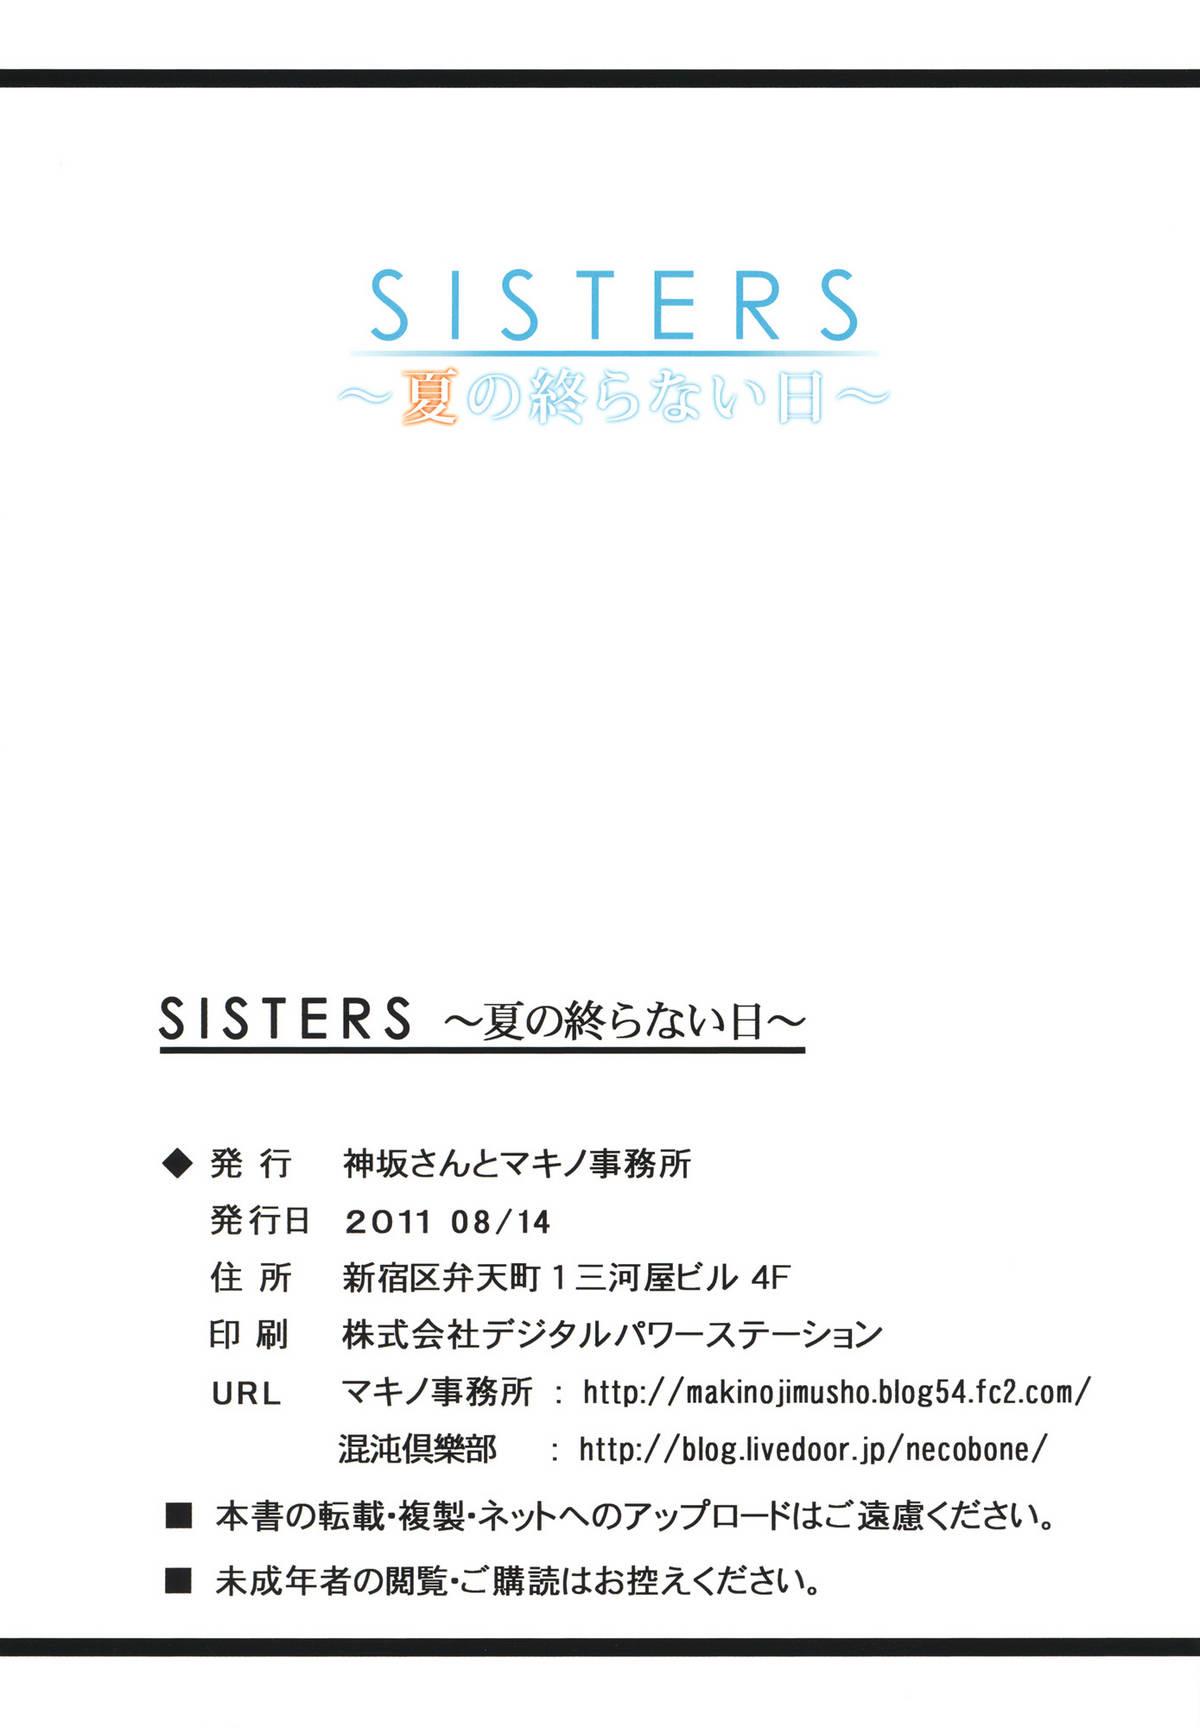 Star SISTERS - Kakusareta Kioku, Natsu no Owaranai Hi - Sisters natsu no saigo no hi Strap On - Page 34